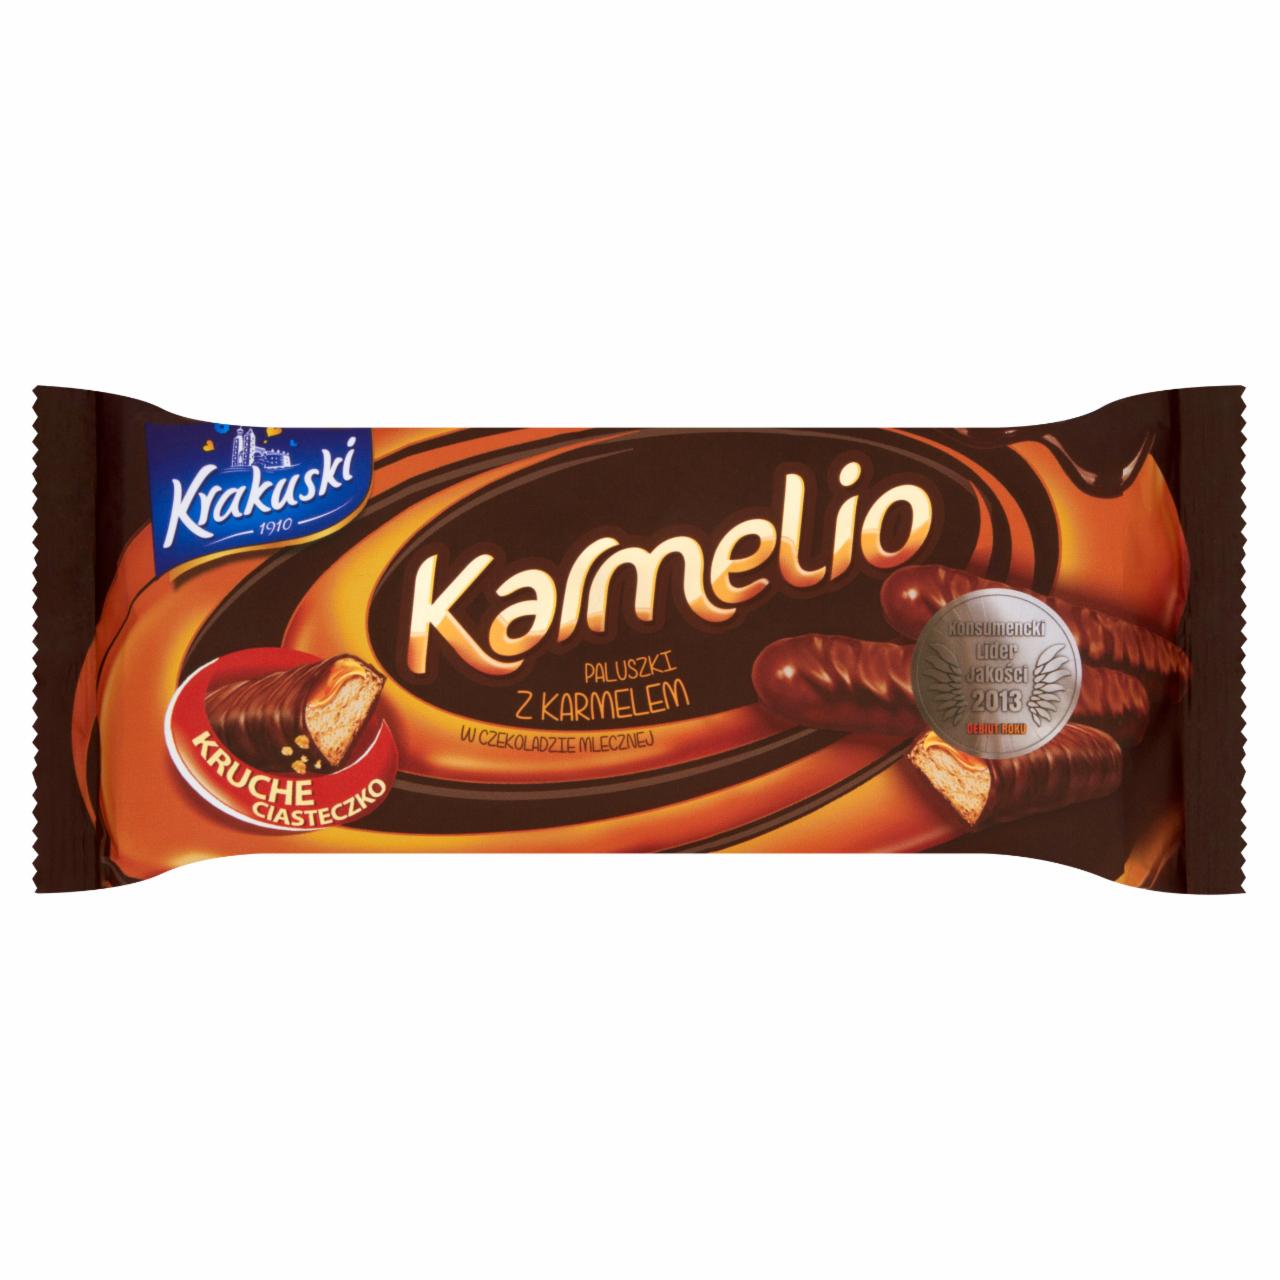 Zdjęcia - Krakuski Karmelio Paluszki z karmelem w czekoladzie mlecznej 113 g